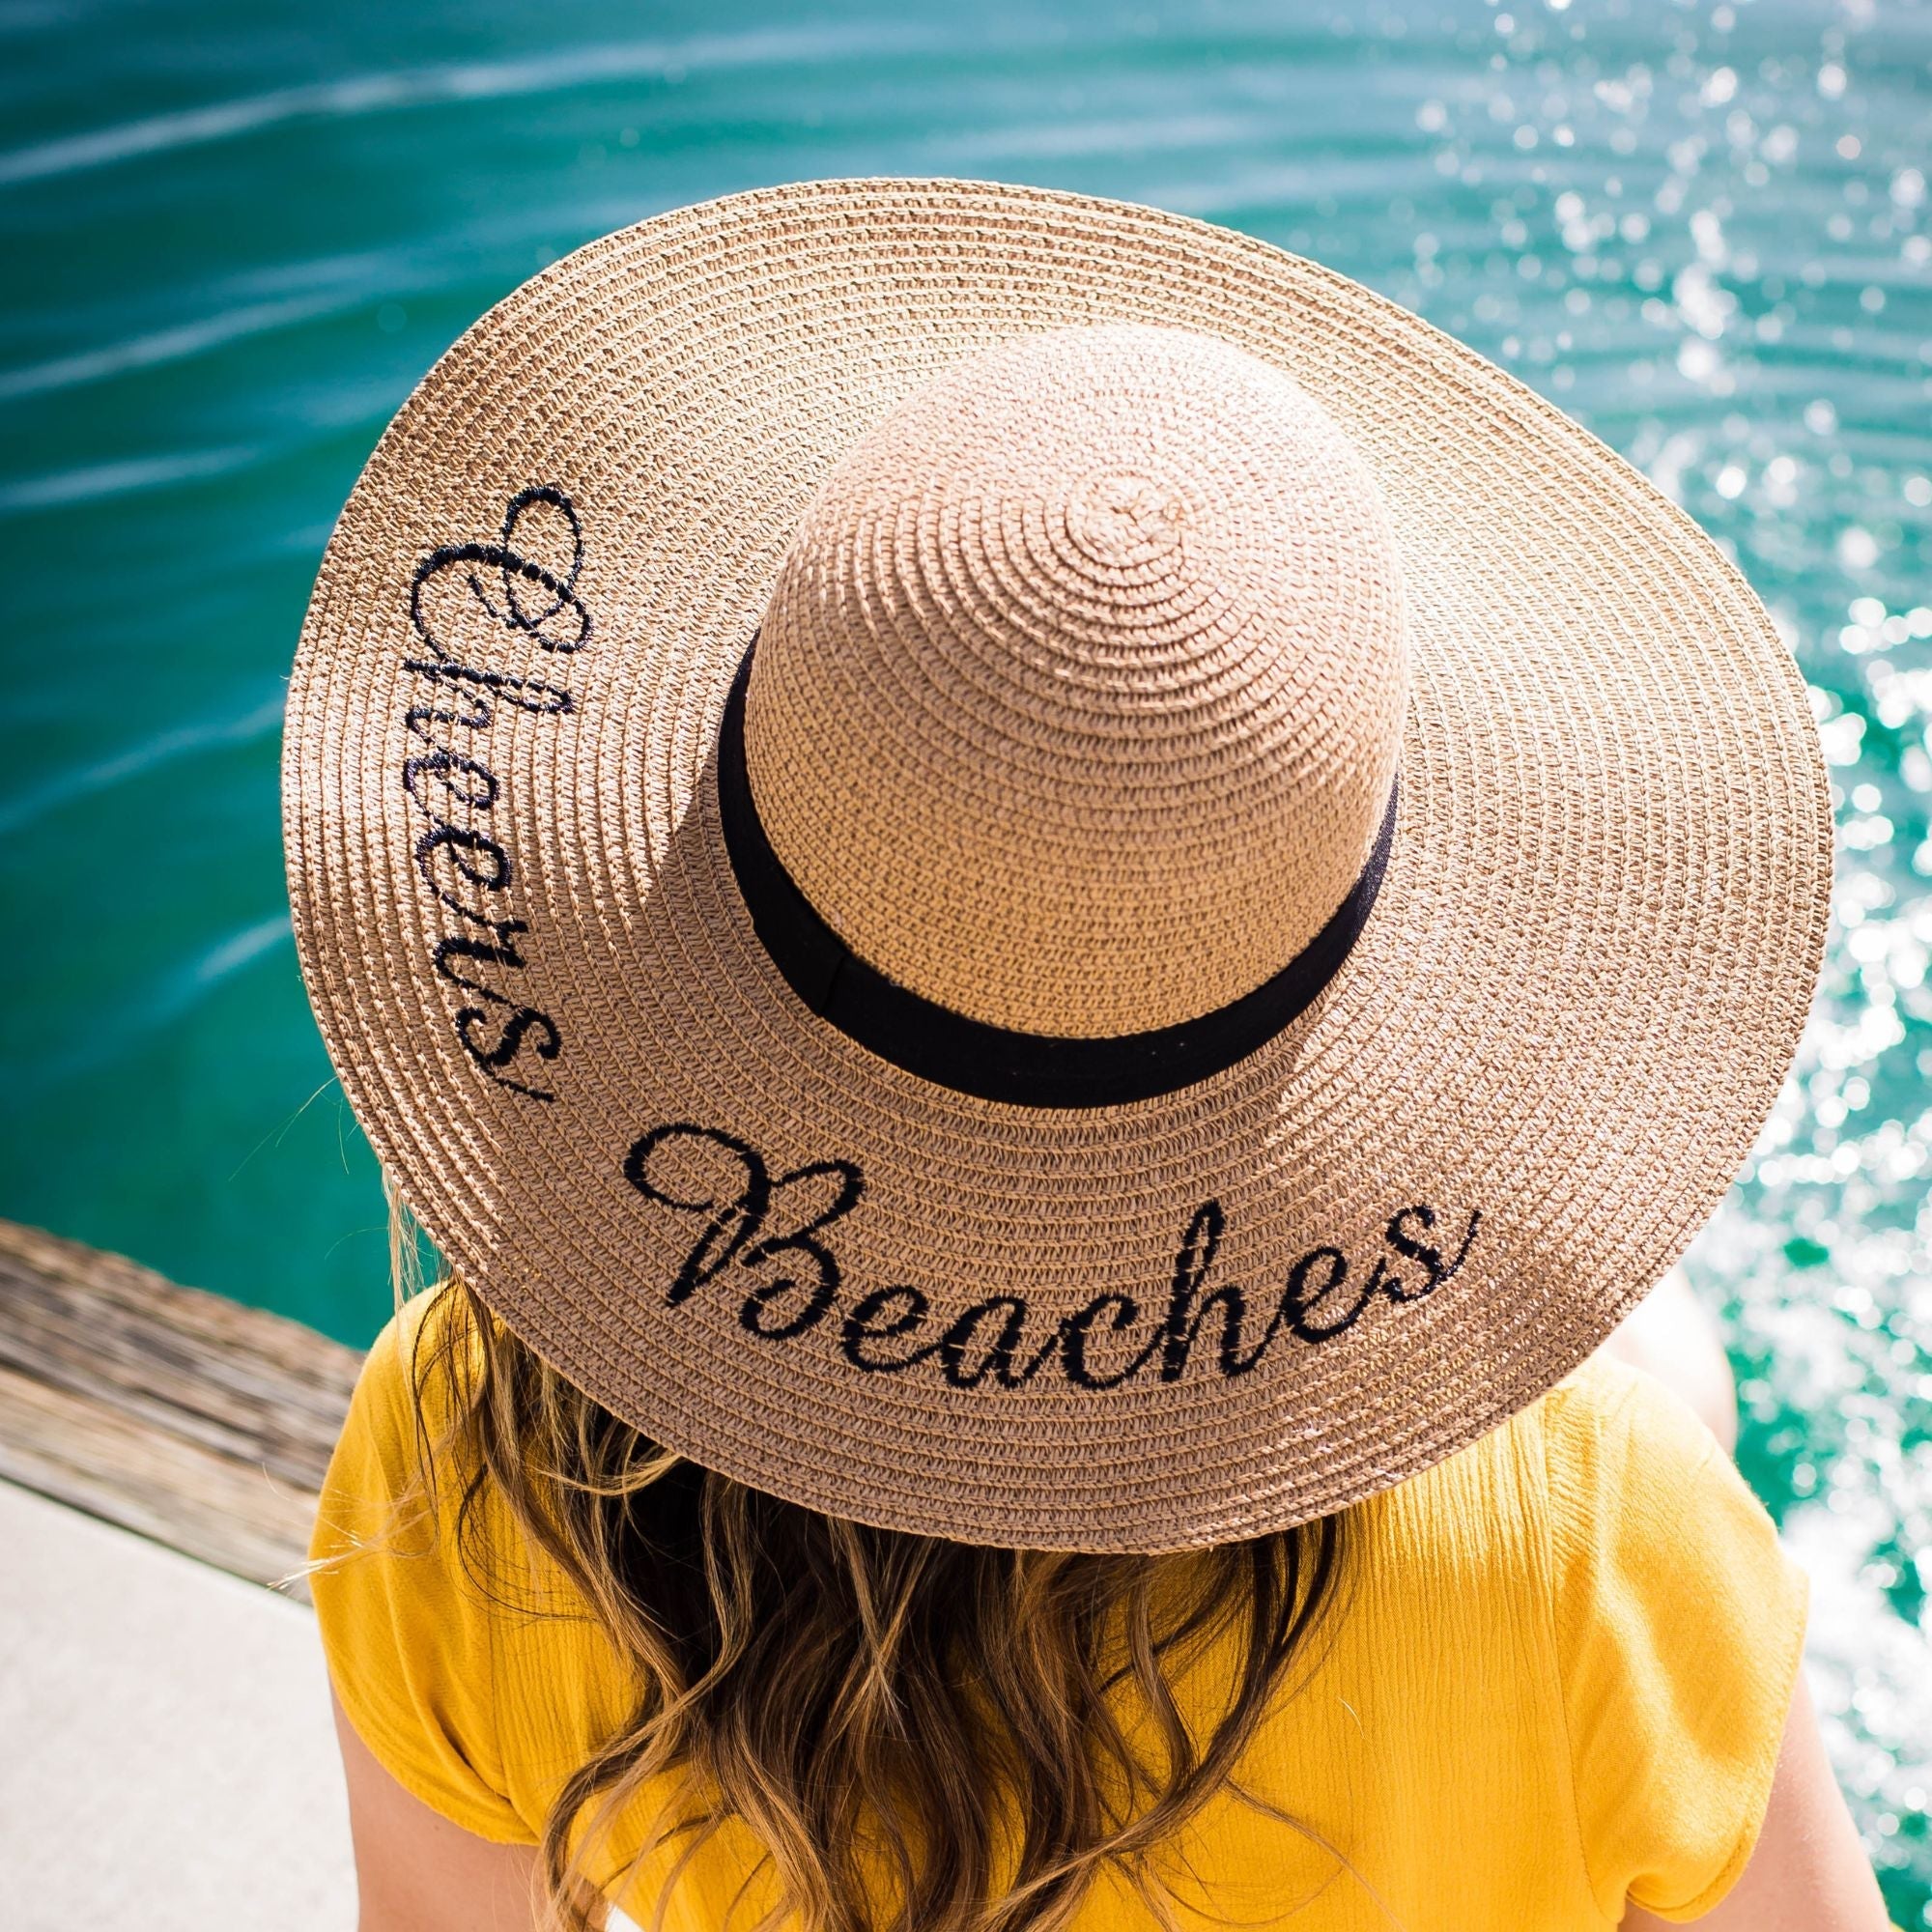 https://www.cheersbeaches.com/cdn/shop/products/cheers-beaches-women-tan-cheers-beaches-floppy-sun-hat-tan-30977386184783_2000x.jpg?v=1658773322